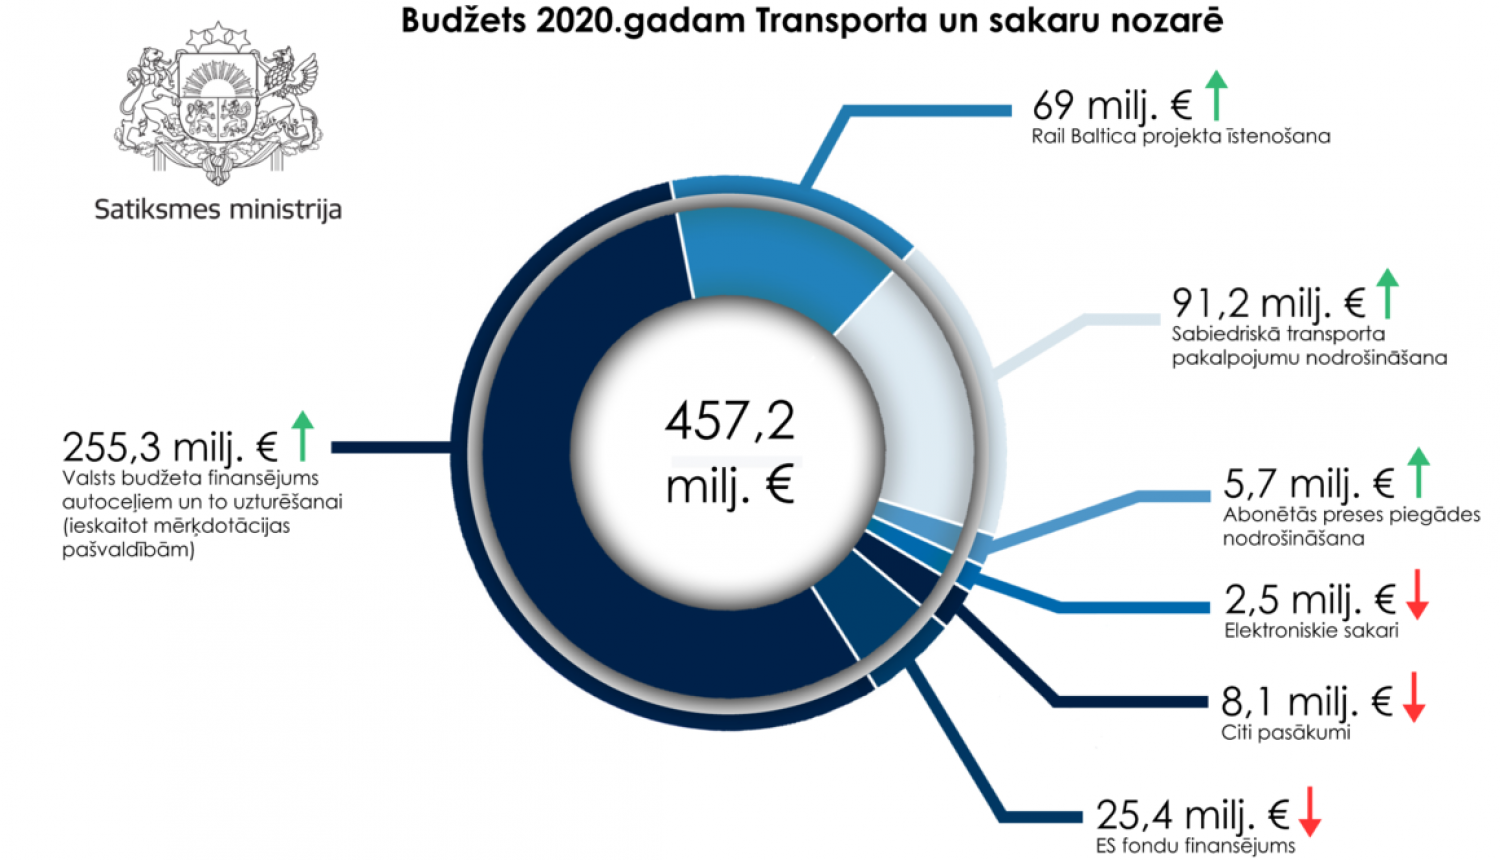 2020. gada valsts budžets Satiksmes ministrijas atbildības jomās –457 175 598 eiro